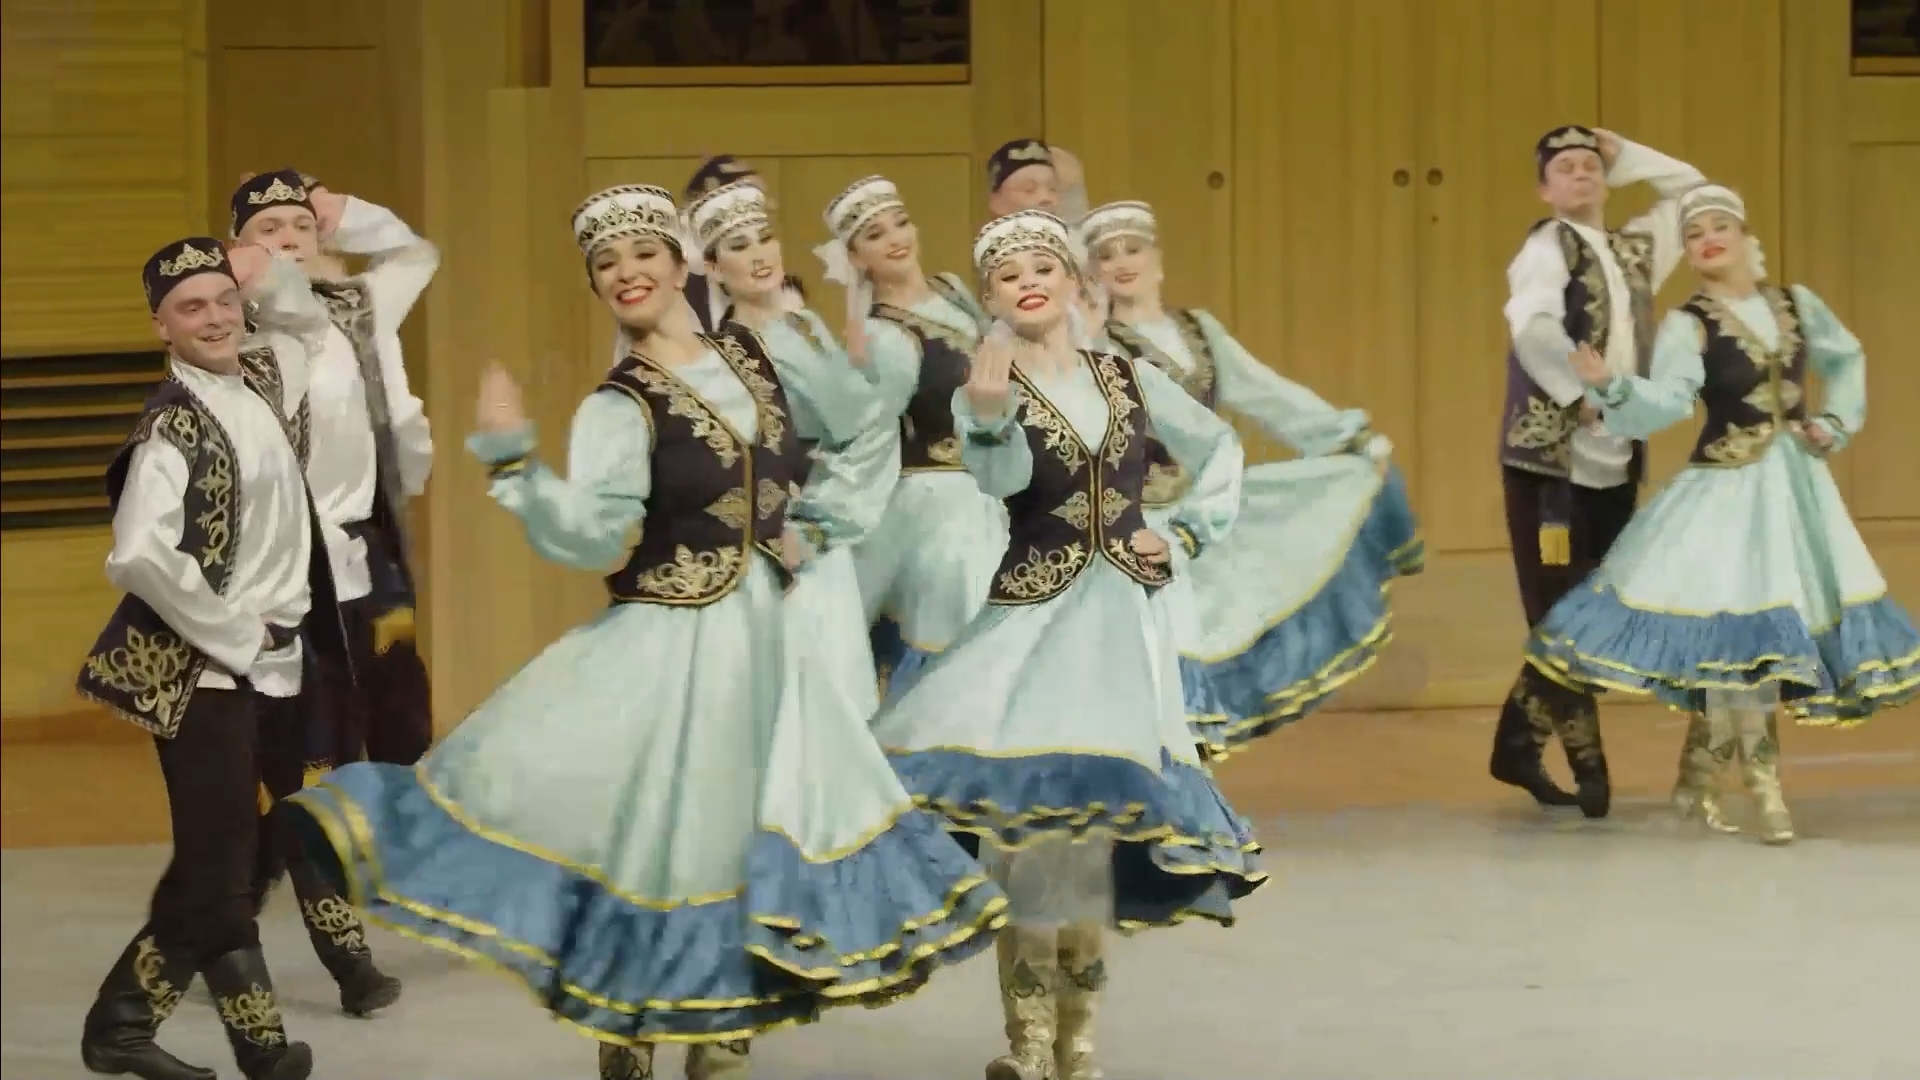 "Татарский танец", Ансамбль "Донбасс" "Tatar Dance", Ensemble "Donbass"